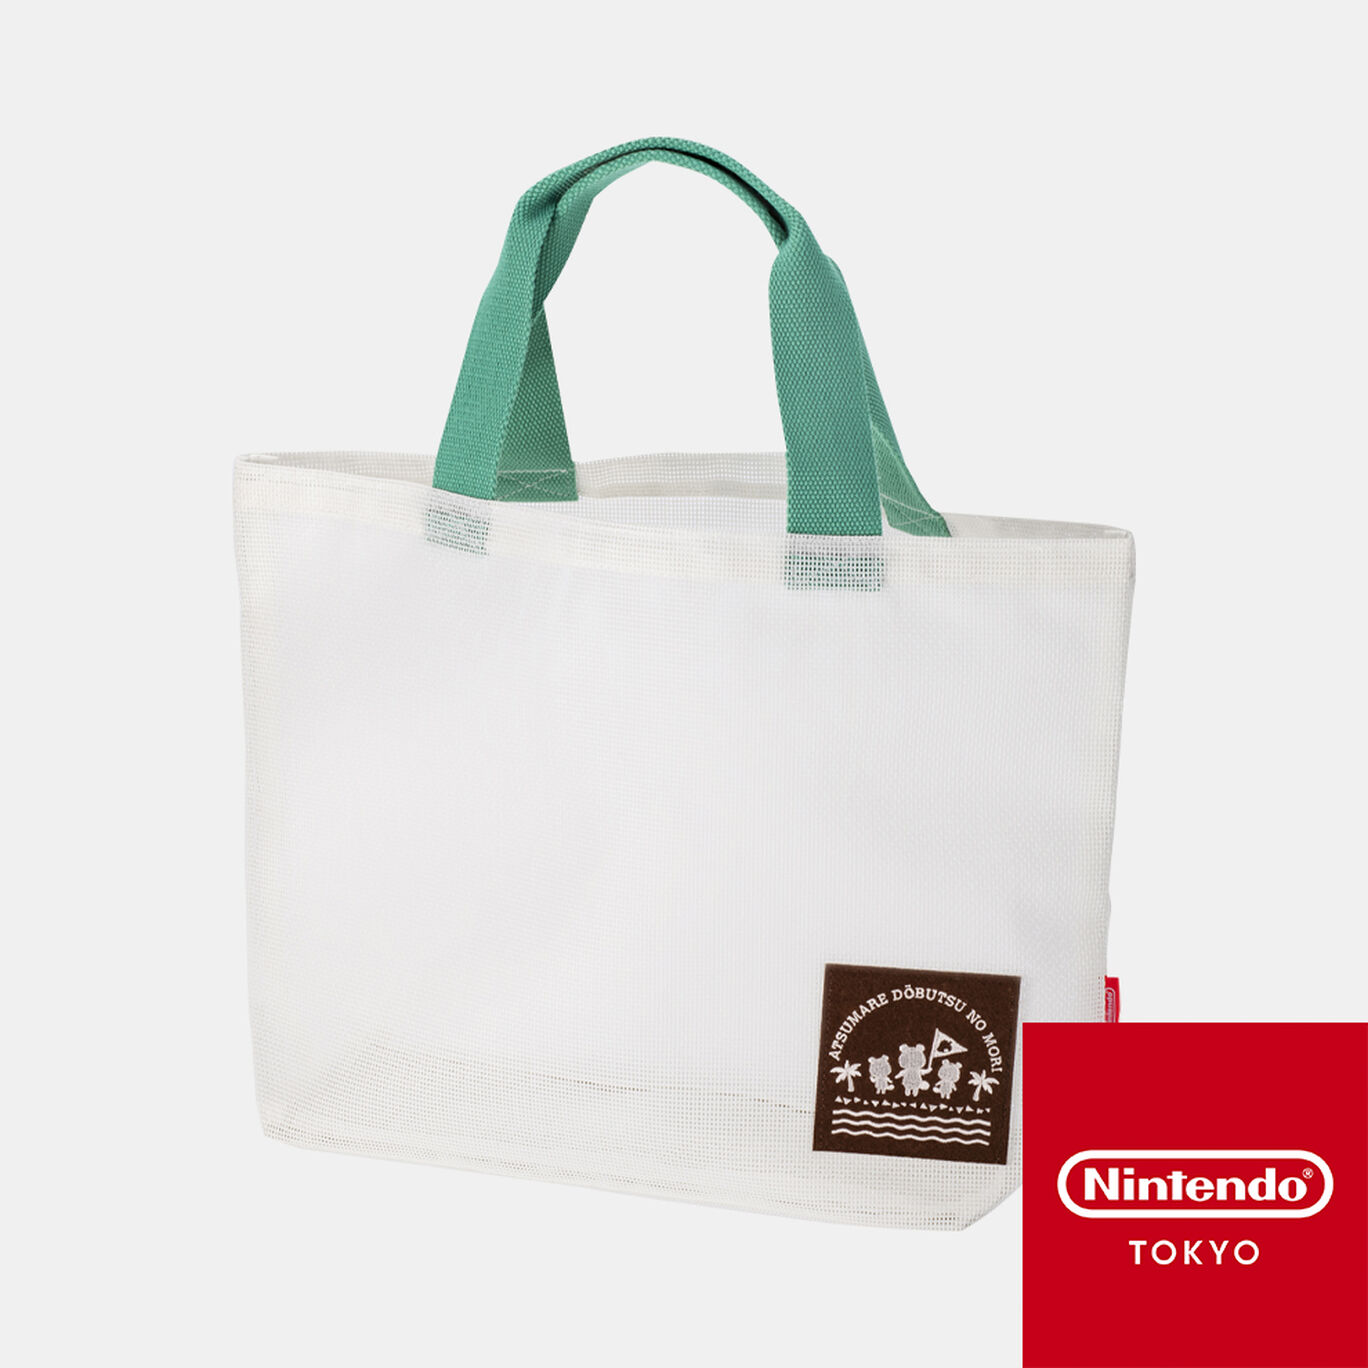 トートバッグ あつまれ どうぶつの森 Nintendo Tokyo取り扱い商品 My Nintendo Store マイニンテンドーストア